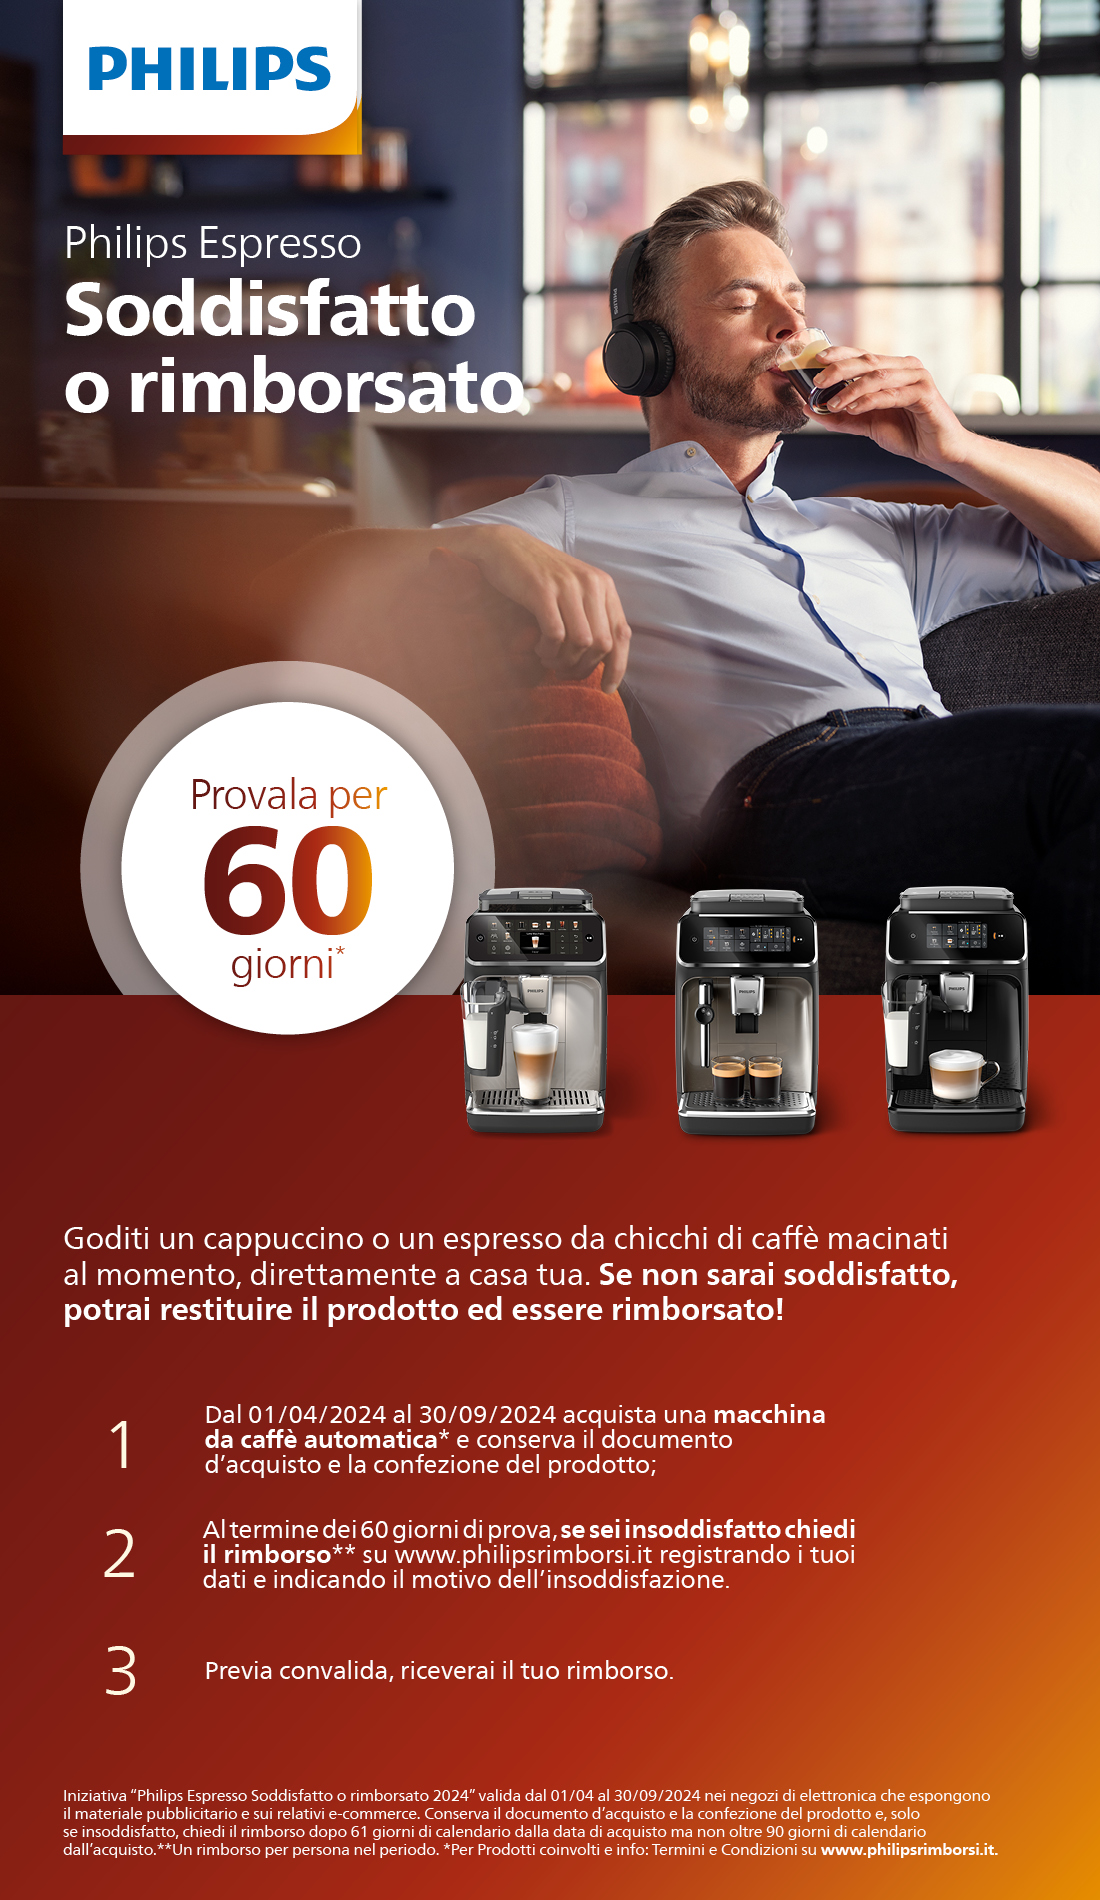 Promozione Piccoli elettrodomestici: Philips Espresso: Soddisfatto o Rimborsato